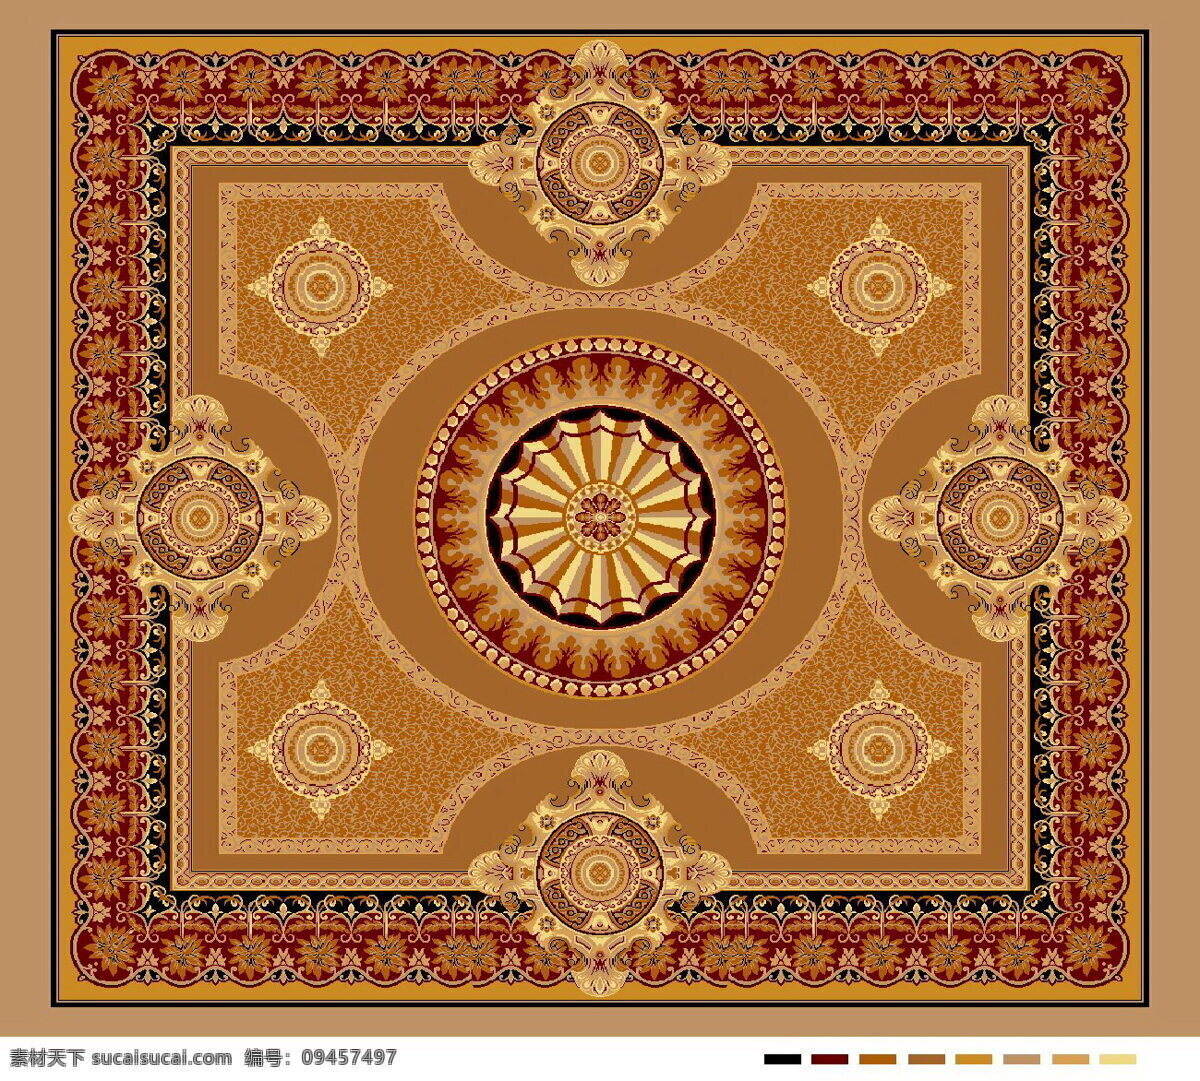 欧式 大 宴会厅 地毯 设计图 手工地毯 室内装饰 装饰材料 奢华装修 室内设计 底纹 背景底纹 底纹边框